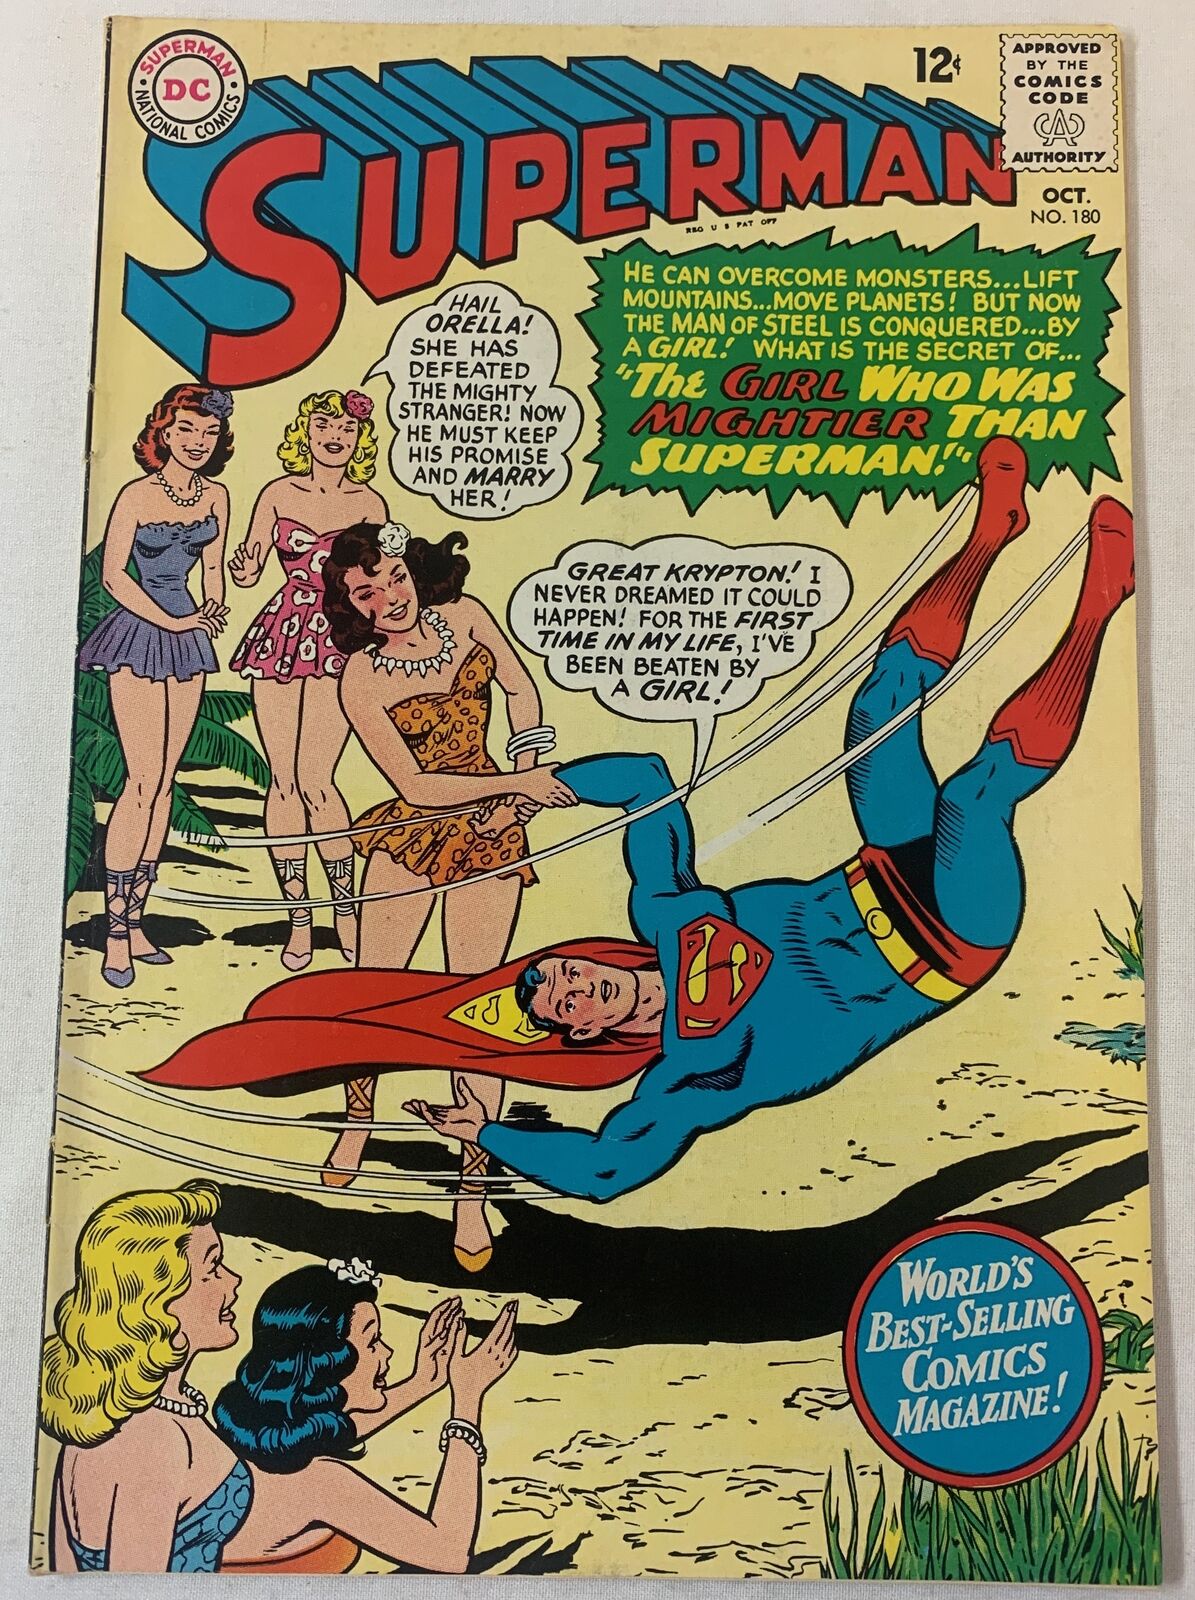 1965 DC Comics SUPERMAN #180 ~ higher end of mid-grade